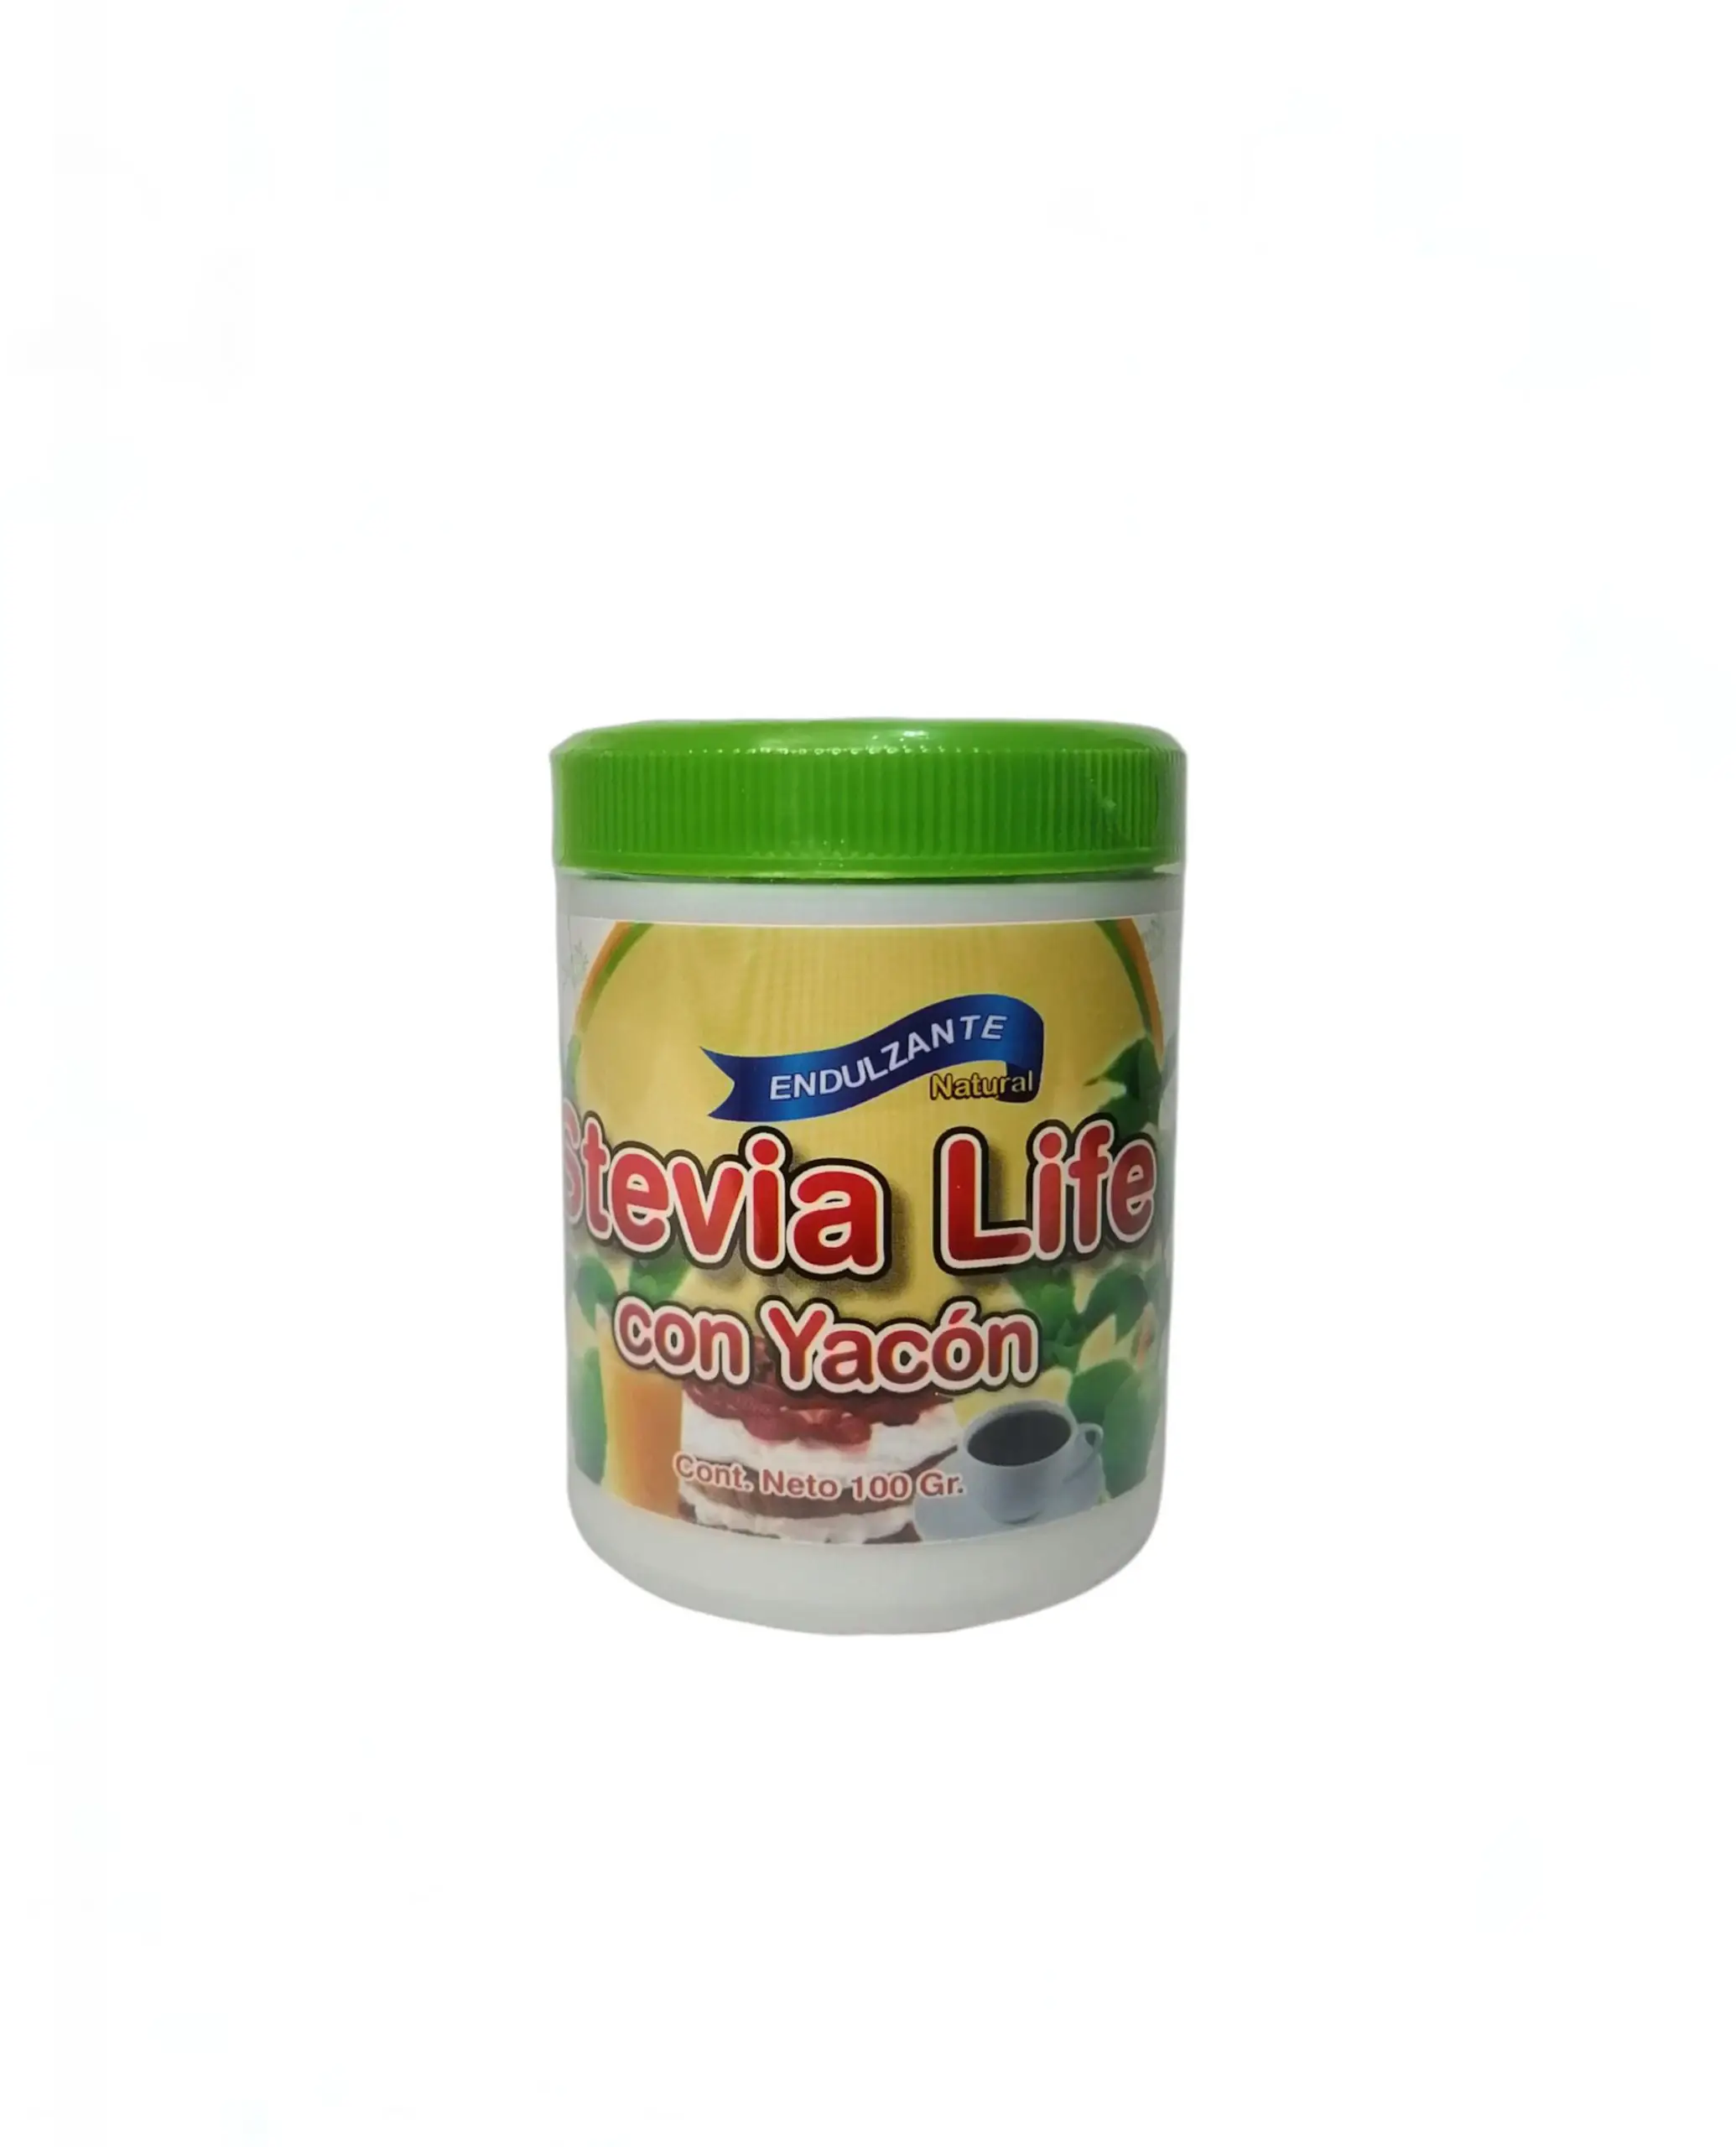 stevia life con yacon